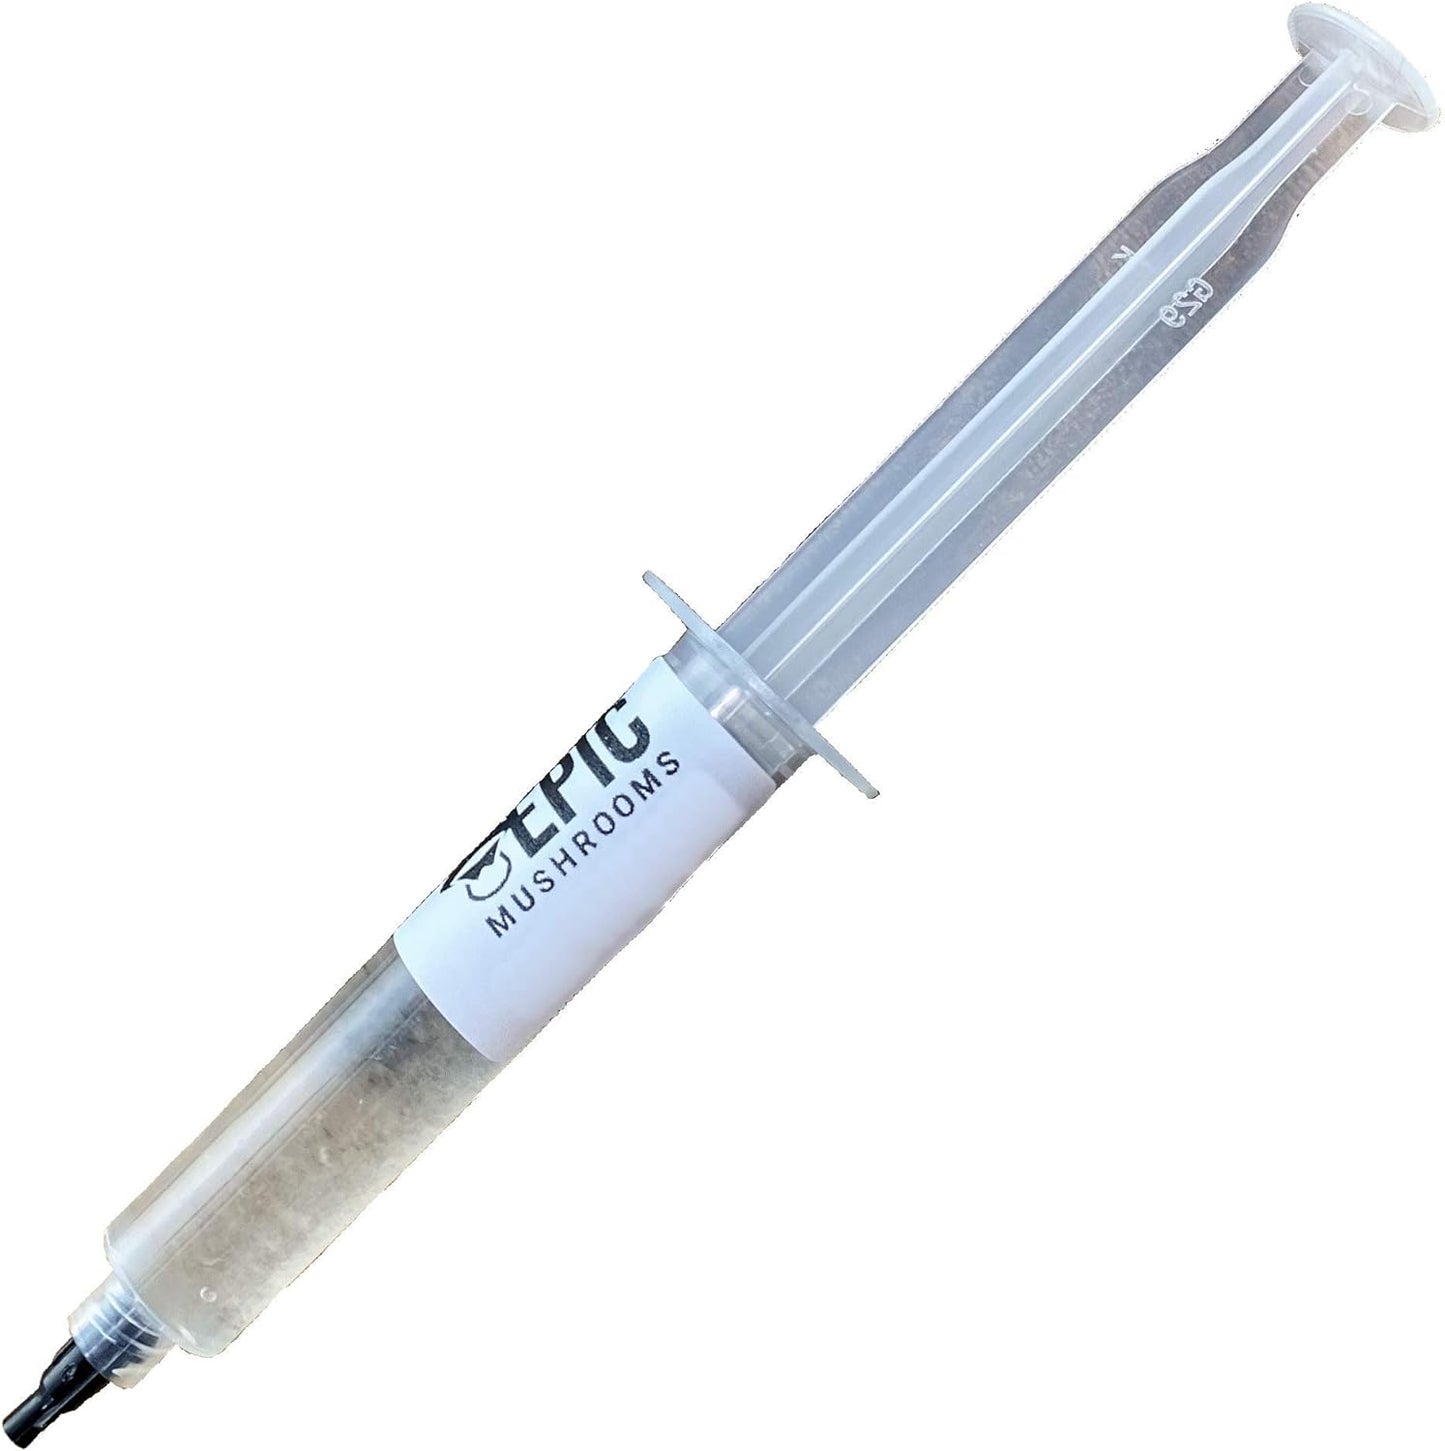 Lab-Grade Liquid Culture Syringe (Lion'S Mane / Hericium Erinaceus)